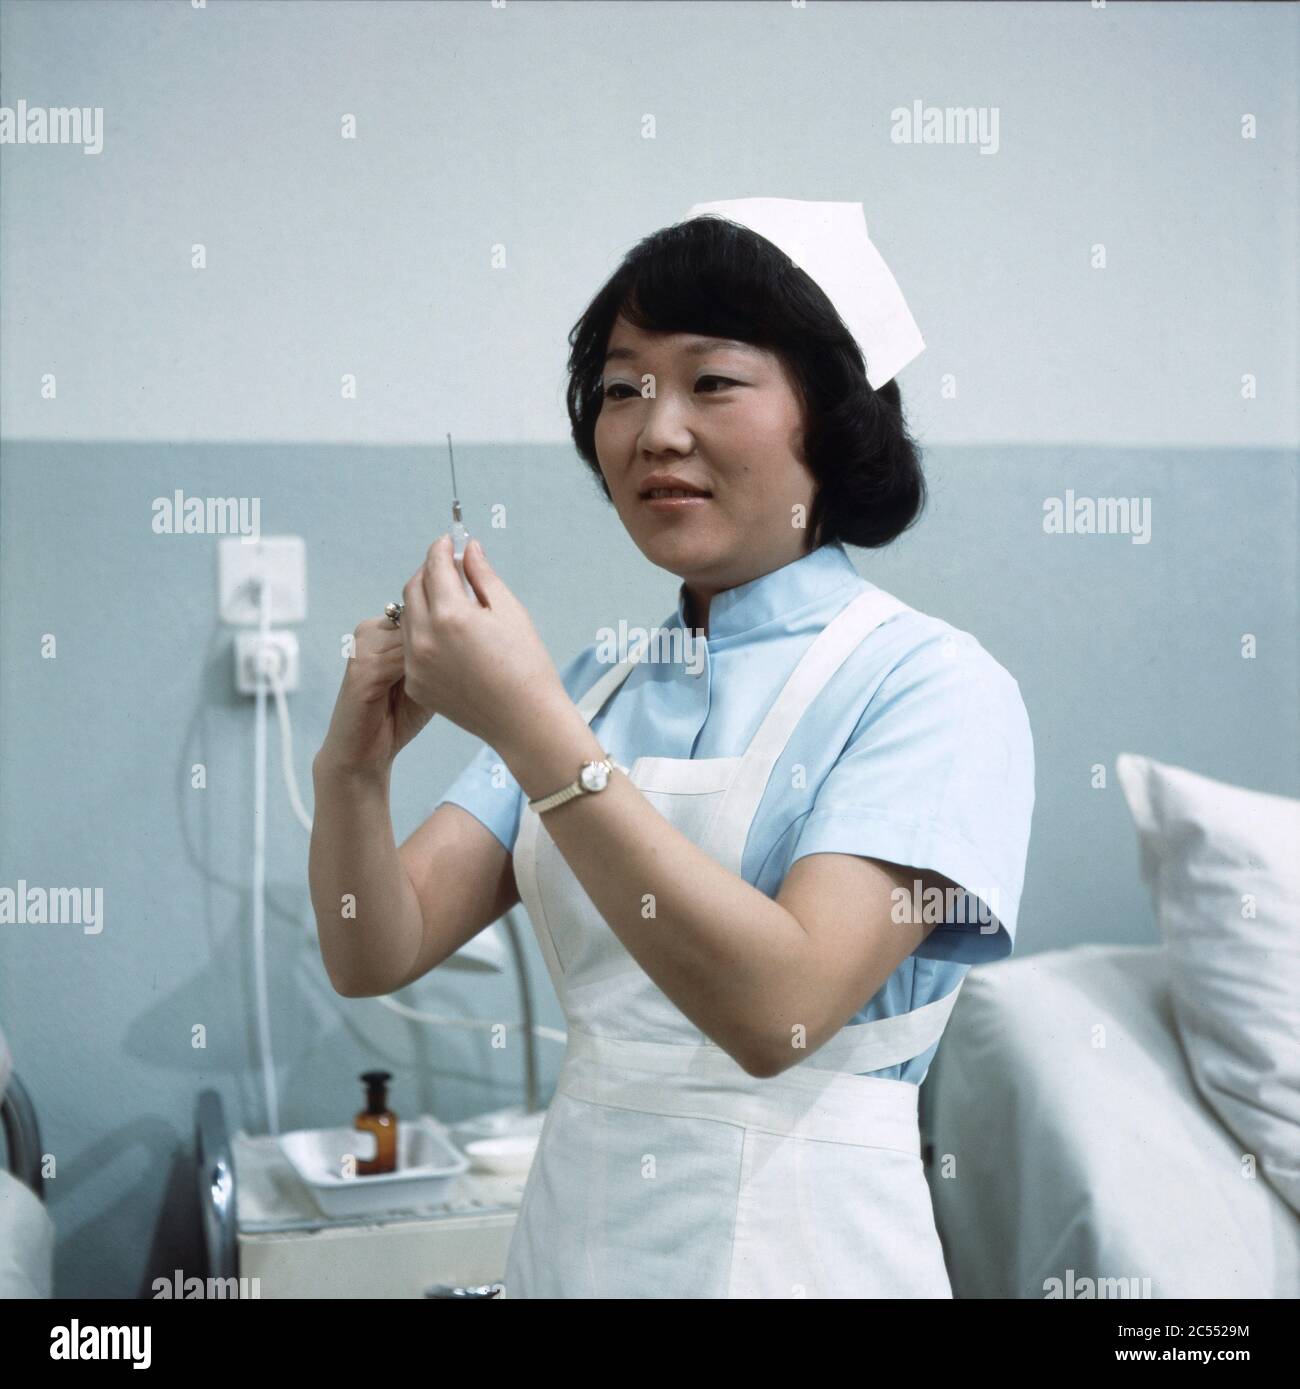 Chong Hi Kim bereitet als Krankenpflegerin eine Spritze vor in Der schwarze Doktor, Regie: Helmut Kissel, 1975. Chong Hi Kim as a nurse preparing an injection in Der schwarze Doktor, Director: Helmut Kissel 1975. Stock Photo